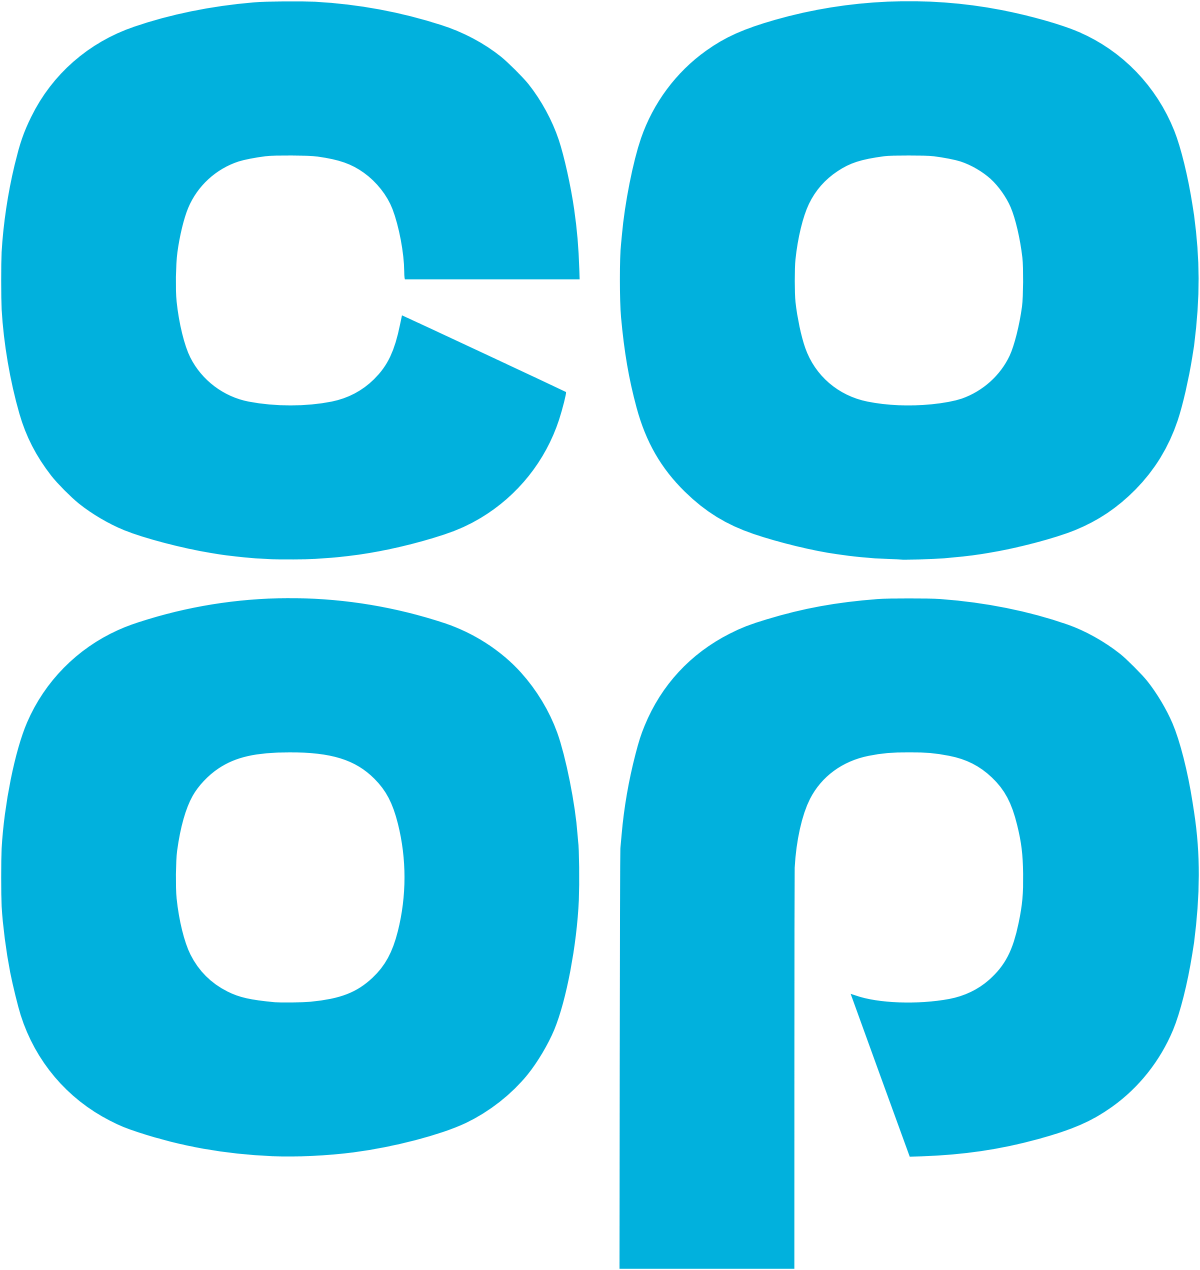 Coop Shop